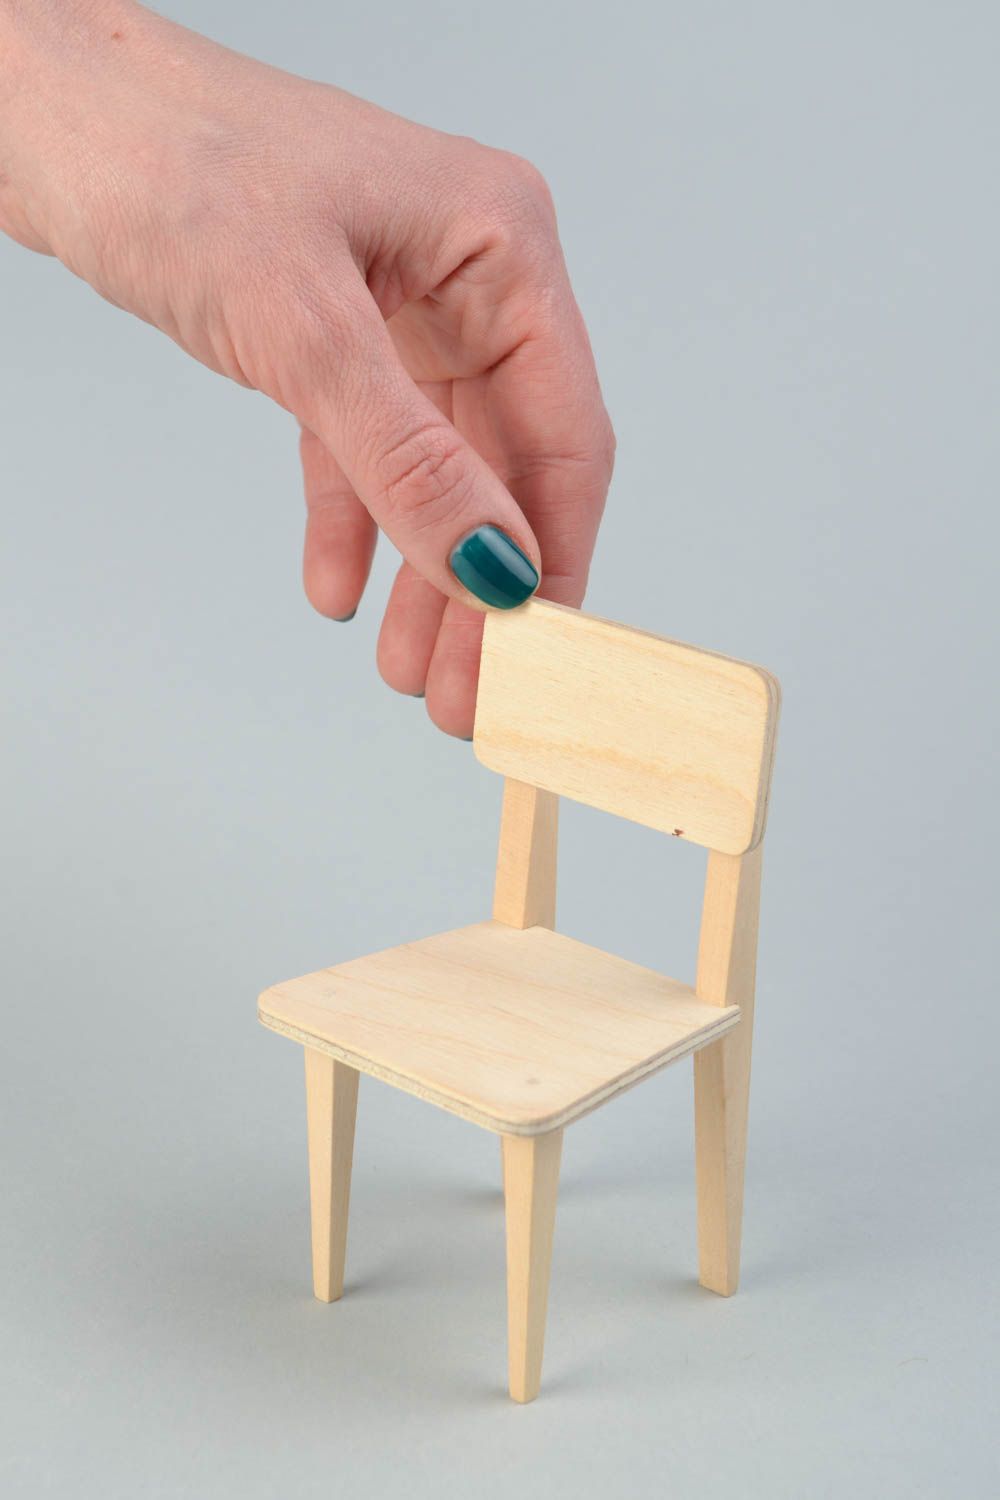 Hölzerner Rohling Stuhl zum Bemalen oder für Decoupage für Puppen Handarbeit foto 2